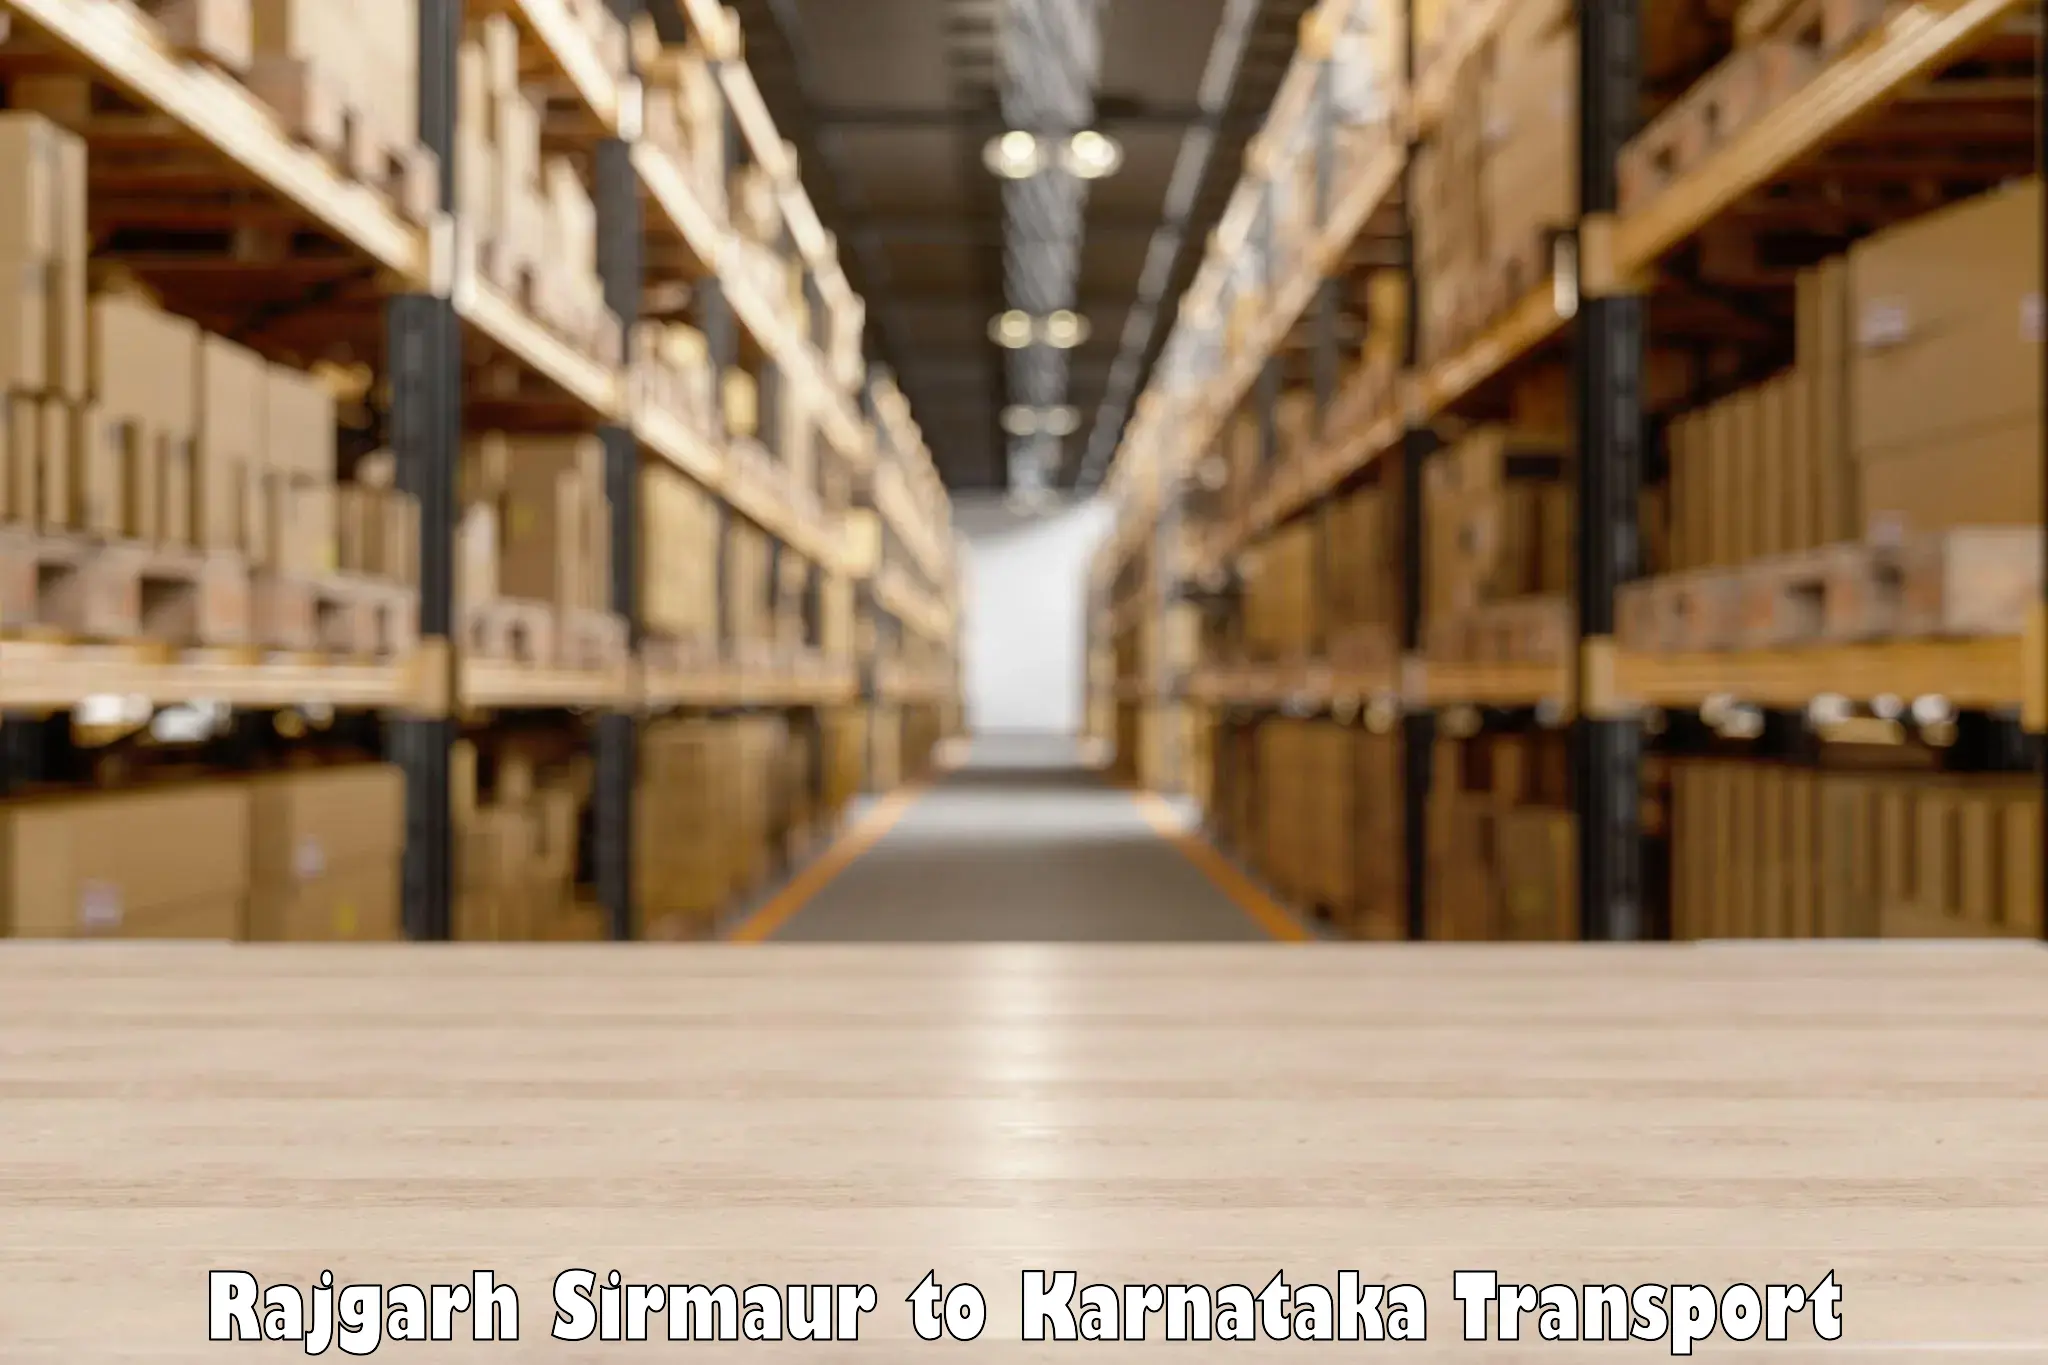 Furniture transport service Rajgarh Sirmaur to Bengaluru